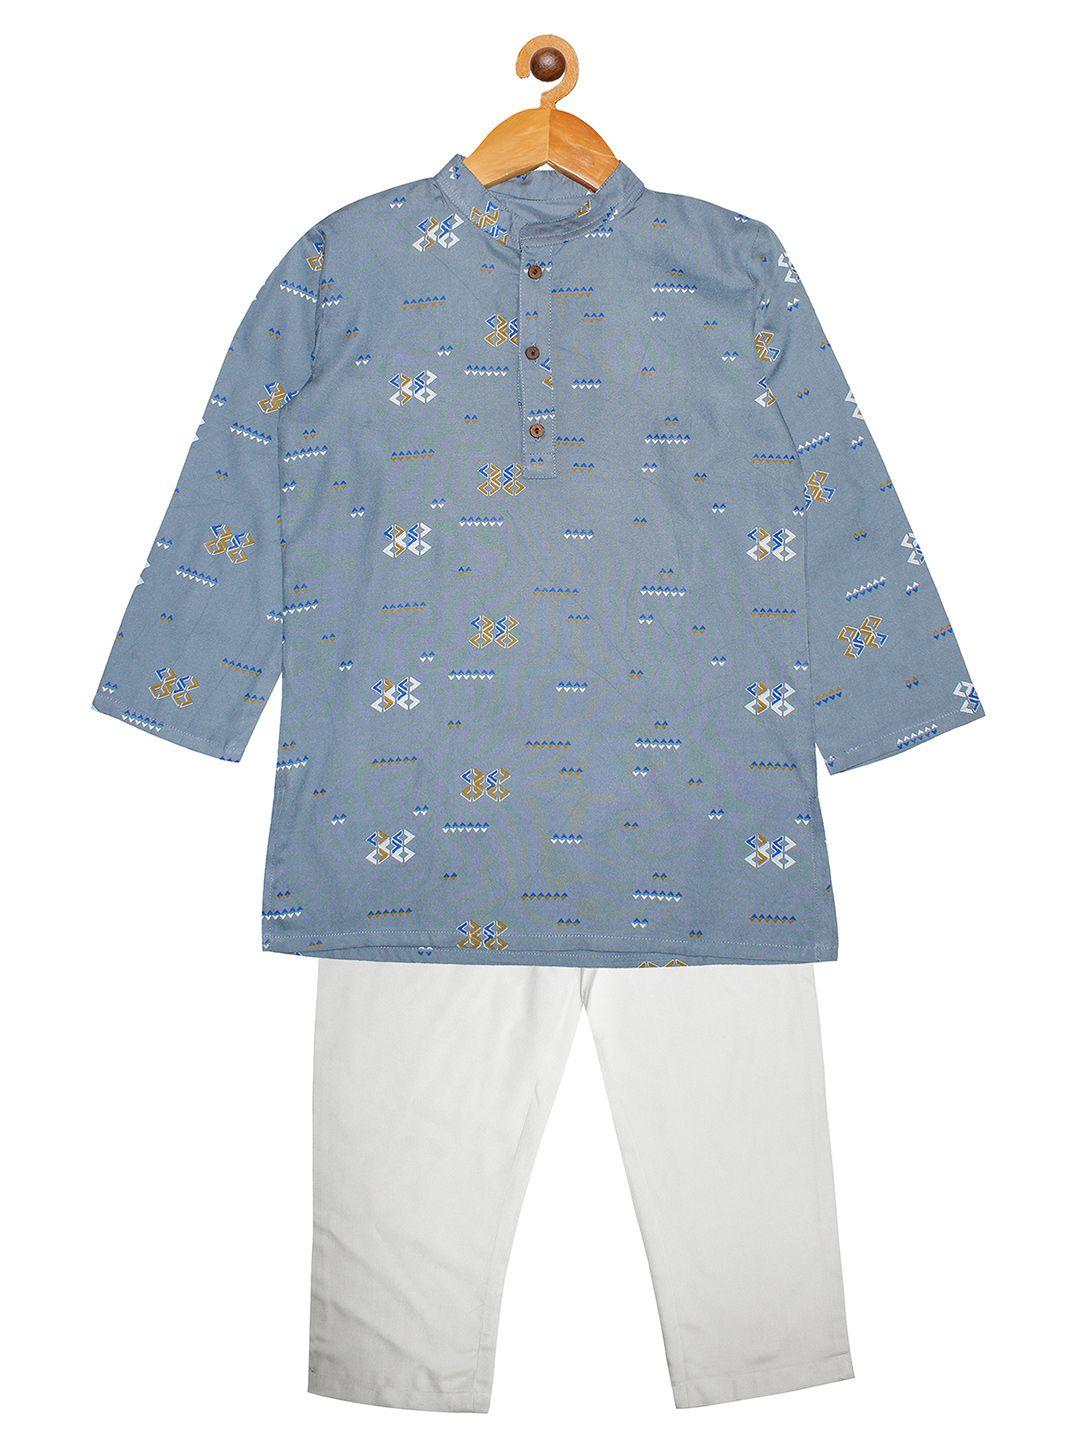 kiddopanti boys blue & white printed kurta with pyjamas